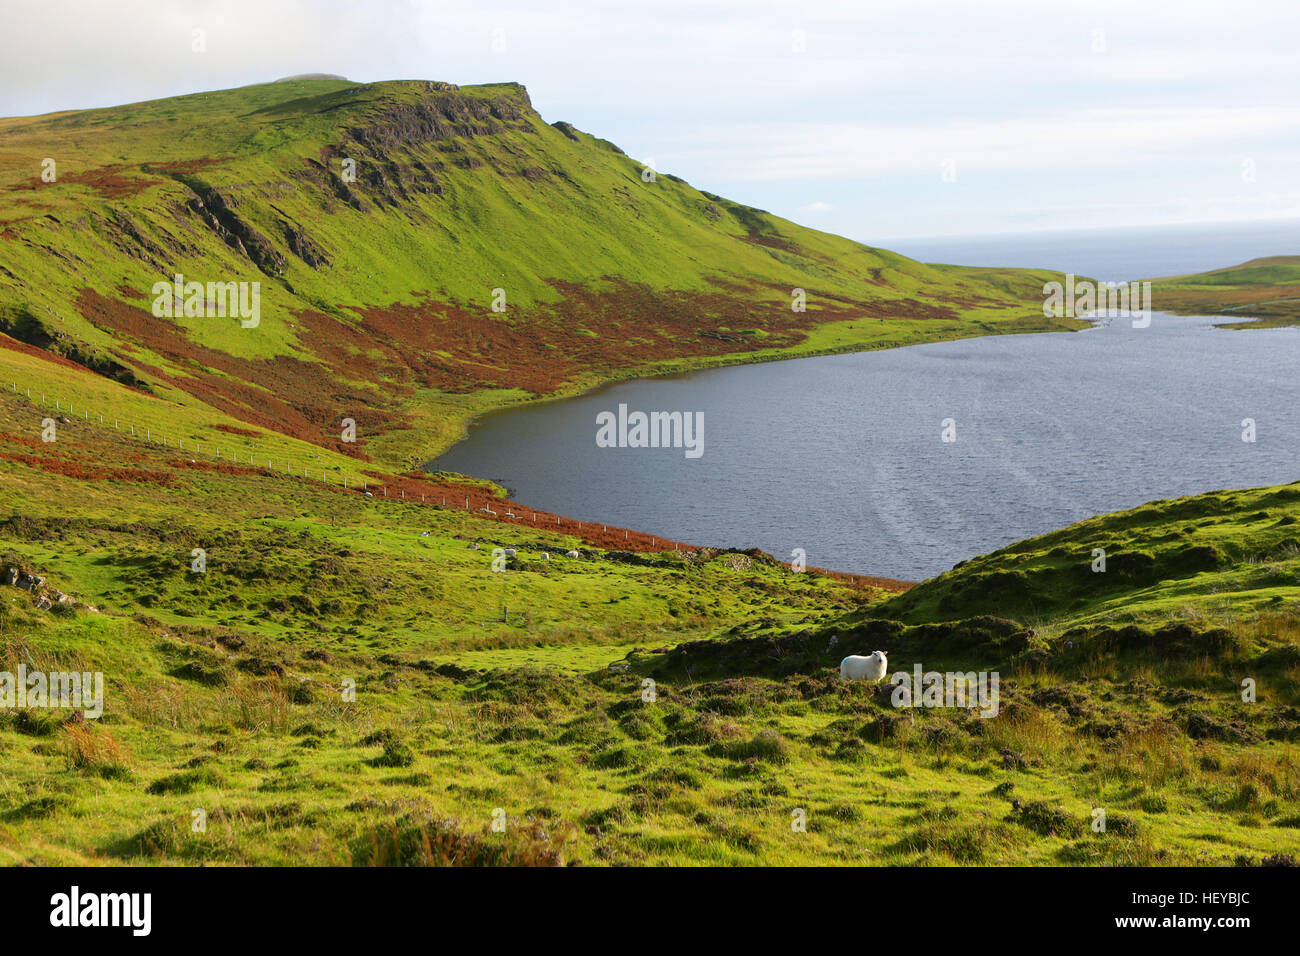 Neist Point est un point de vue sur la plus occidentale de l'île de Skye, en Ecosse. Moutons dans le pâturage. Banque D'Images